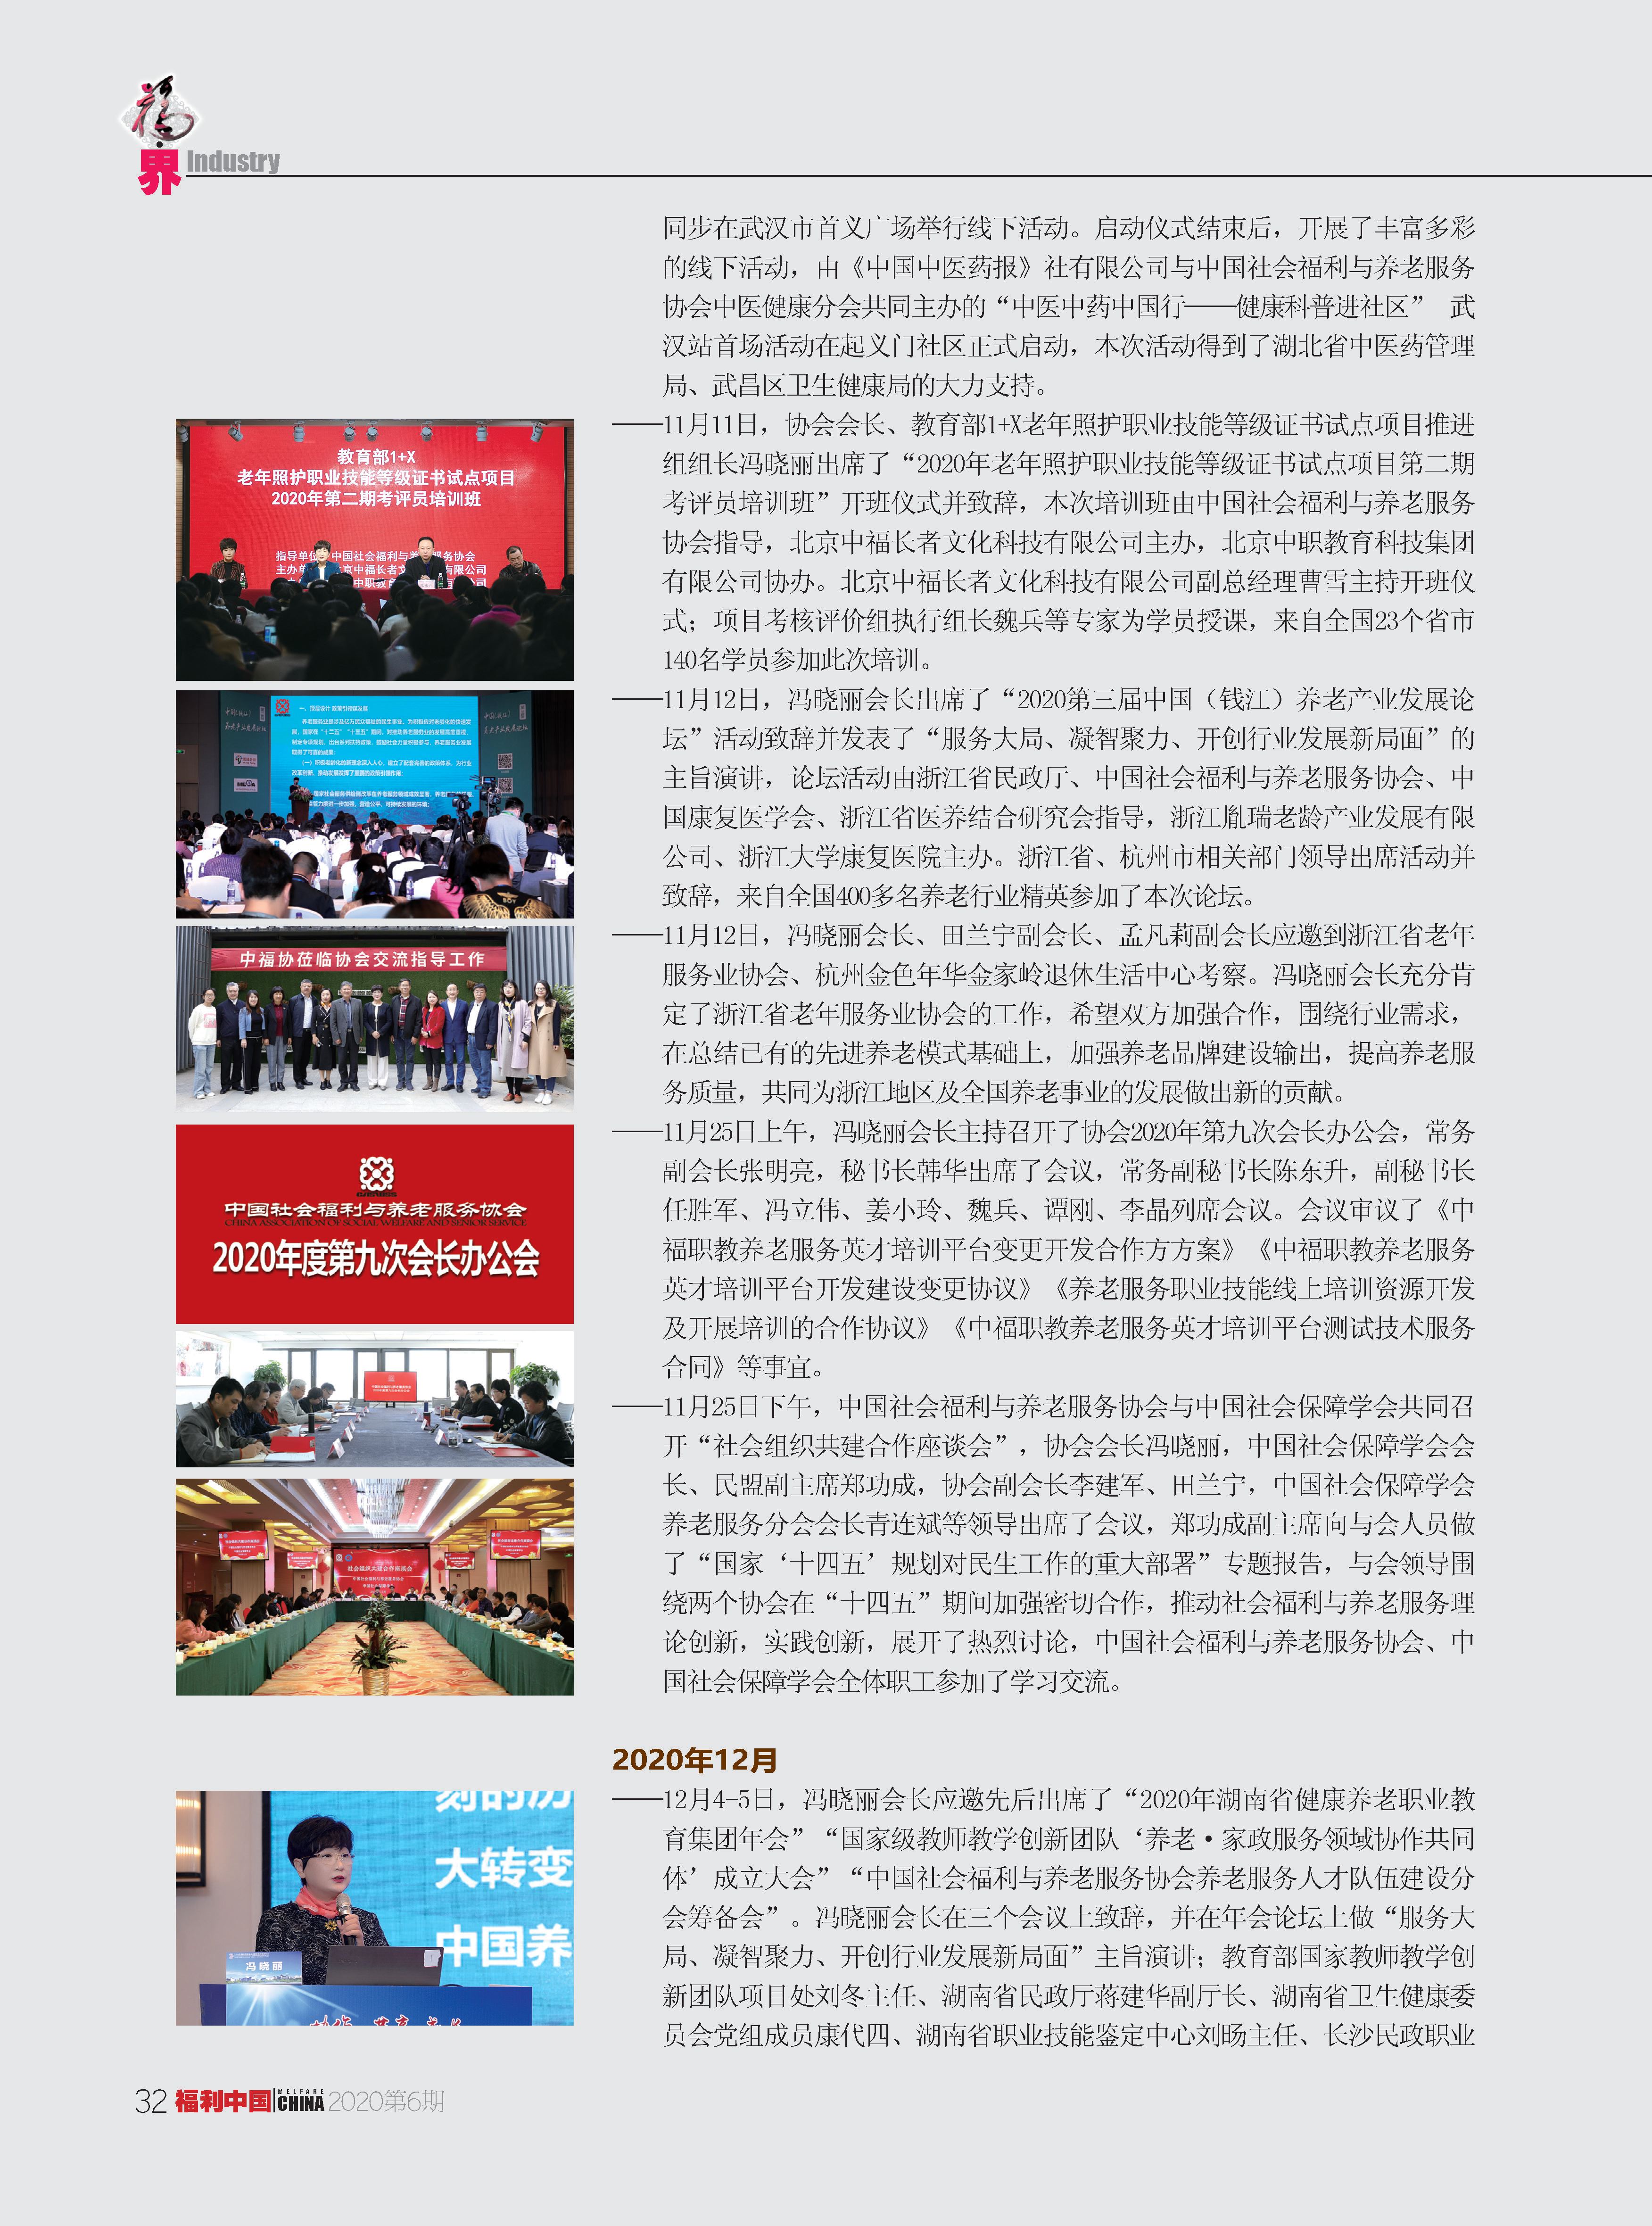 福利中国2020年6期内文_页面_32_副本.jpg